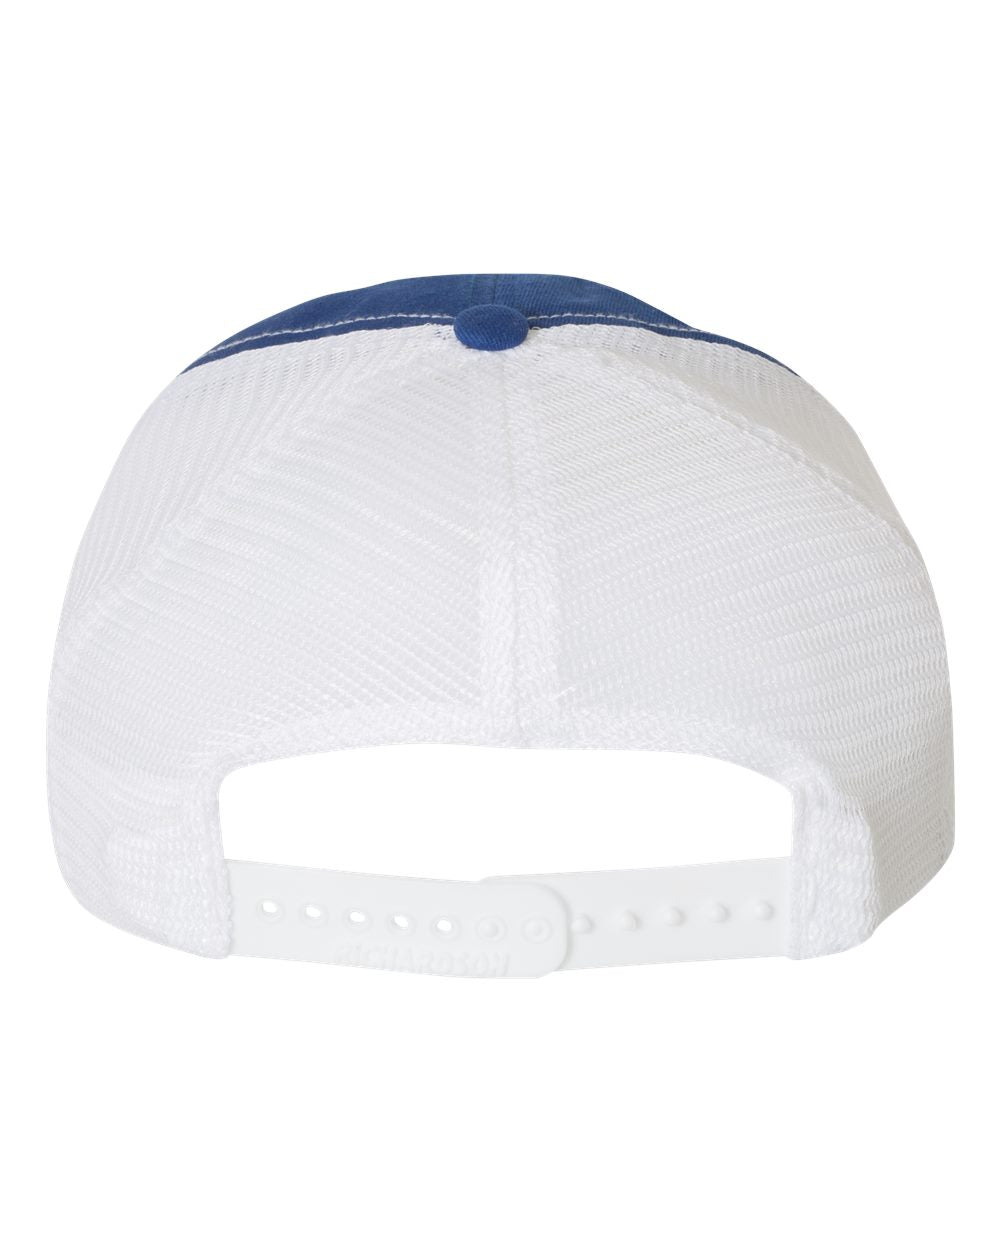 Richardson Garment-Washed Customized Trucker Caps, Royal White